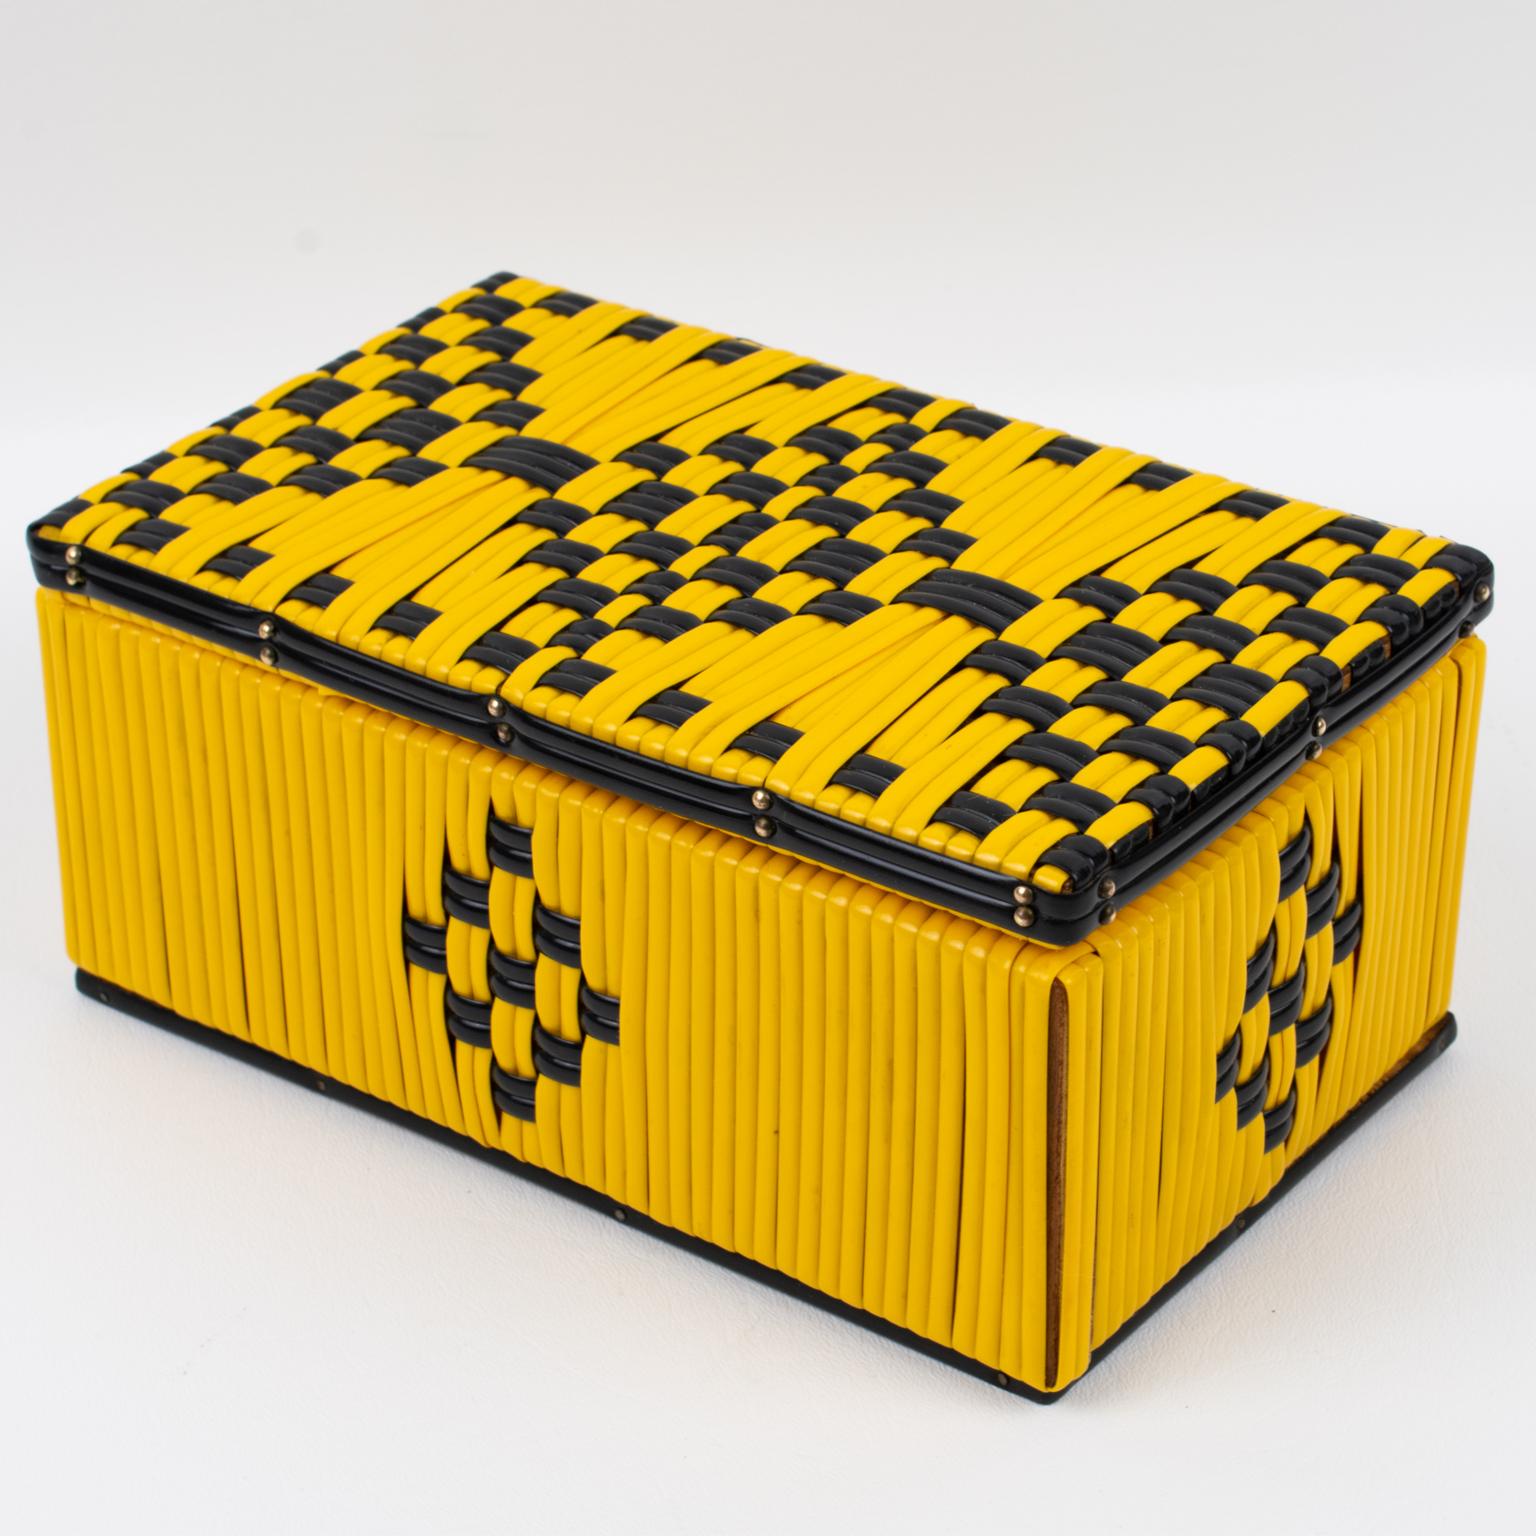 Esta preciosa caja con tapa decorativa francesa de los años 50 presenta un brillante scooby o encaje de manualidades (en francés scoubidou) de plástico de vinilo amarillo con hilo negro de contraste. La caja presenta un impresionante diseño